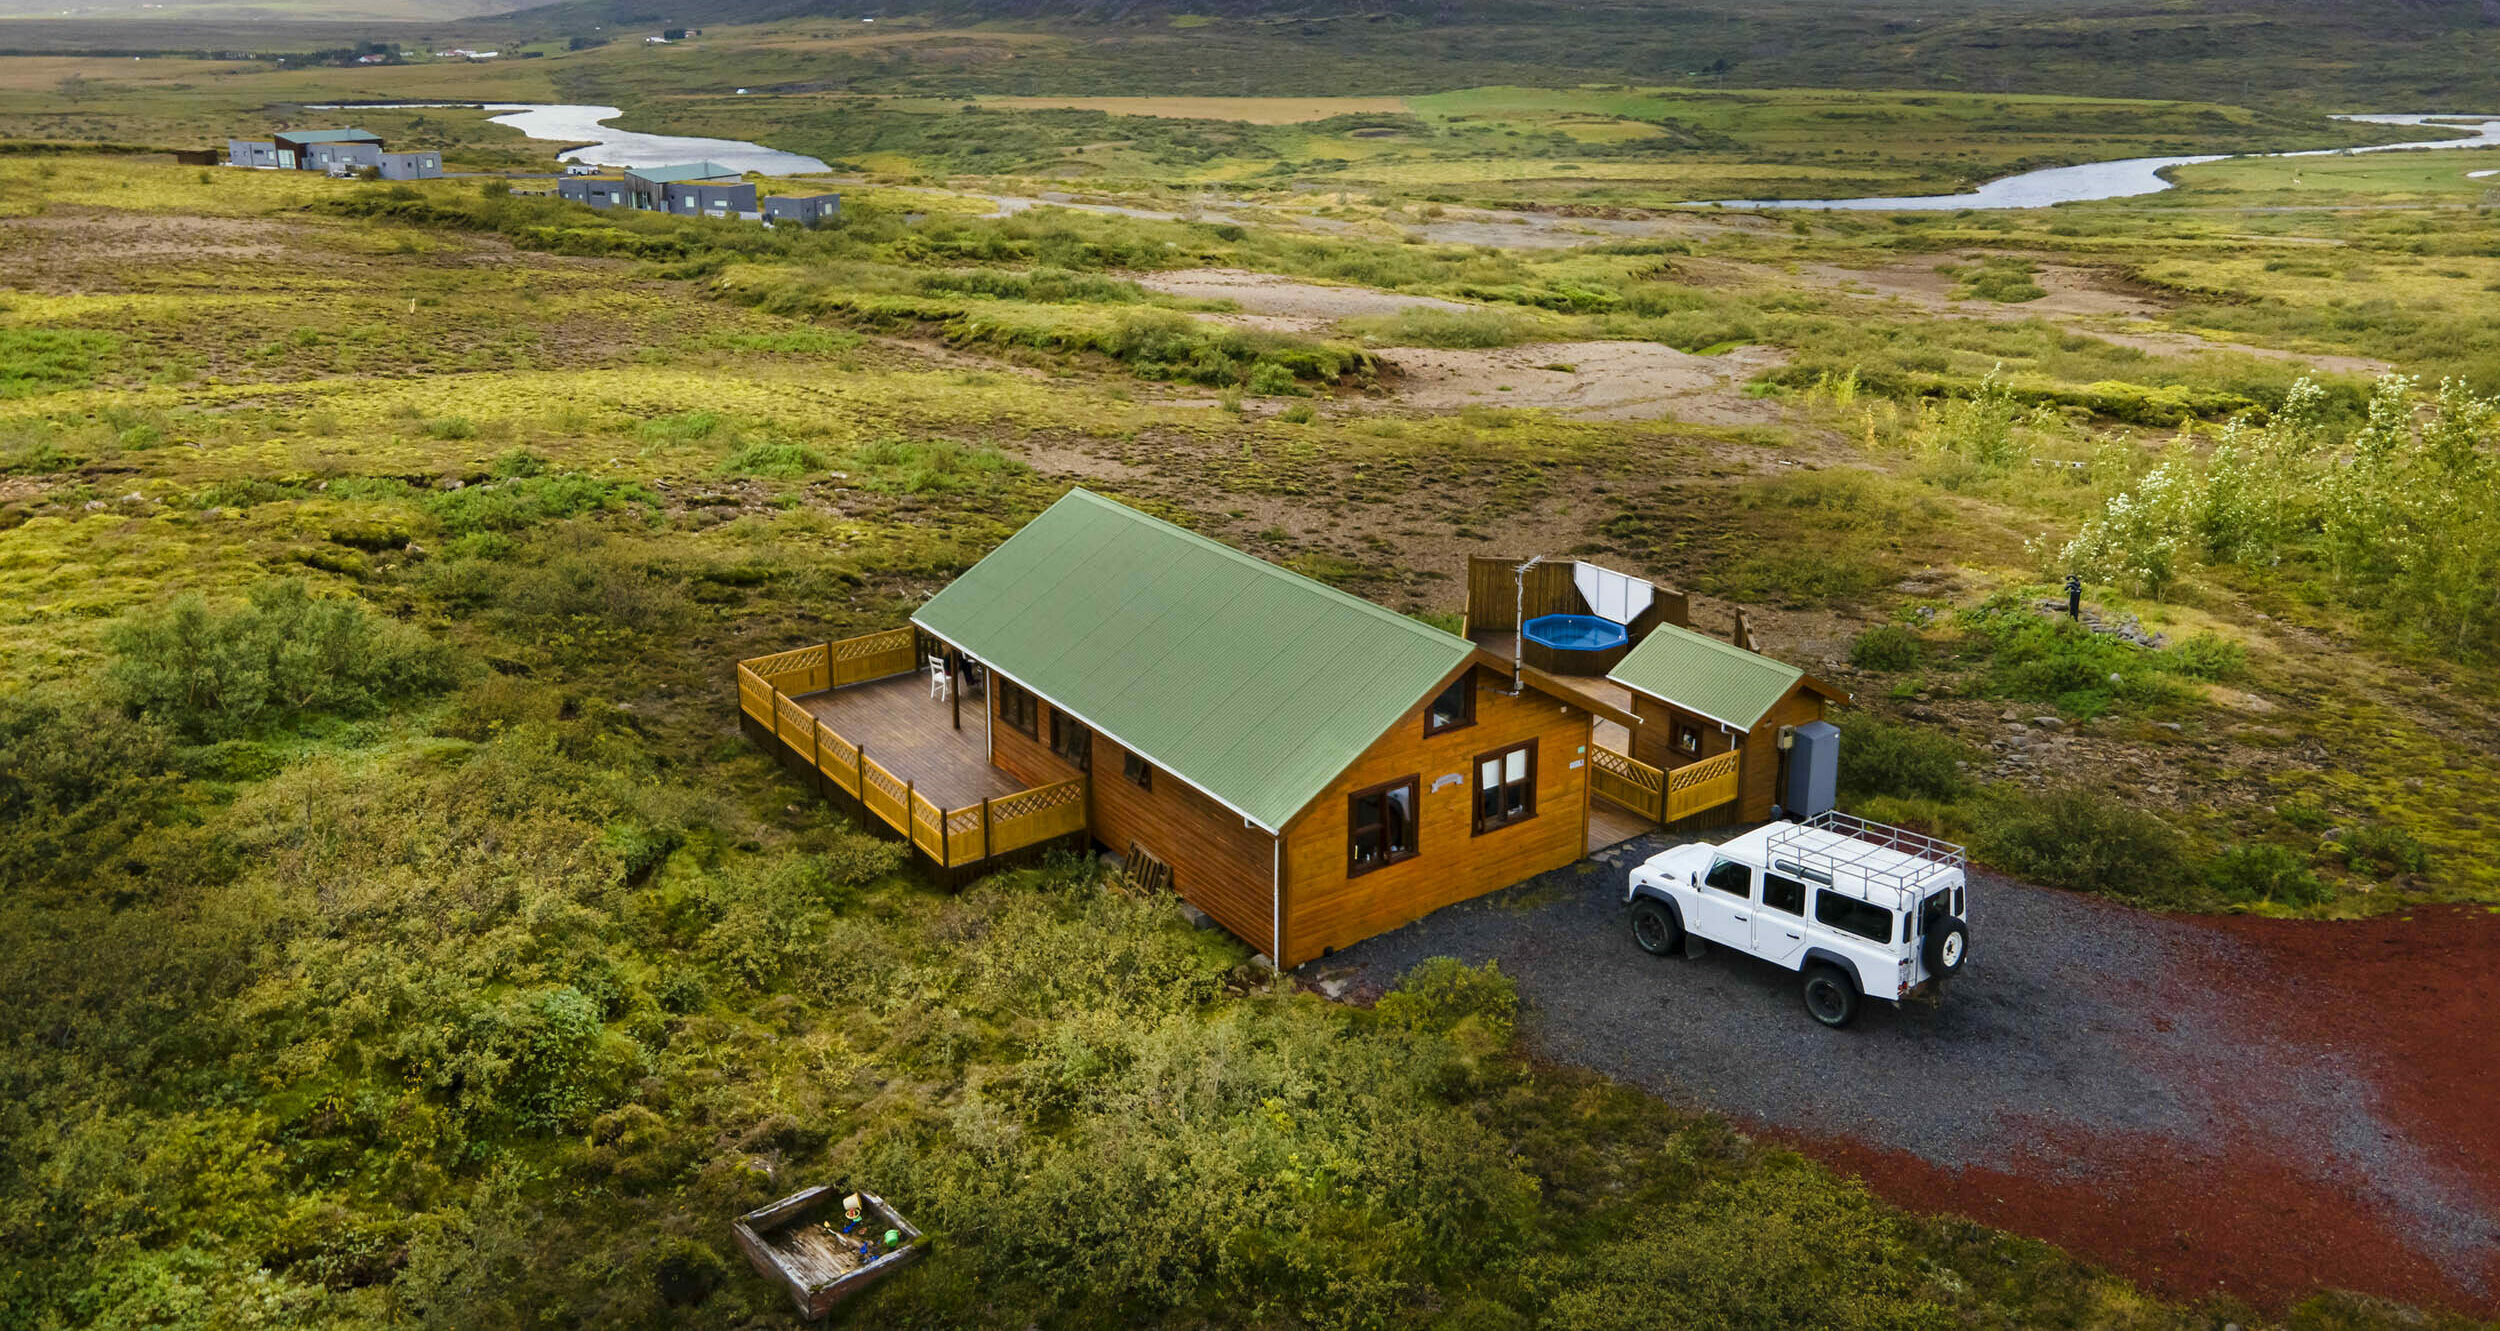 Islandurlaub im Ferienhaus mitten in der Natur